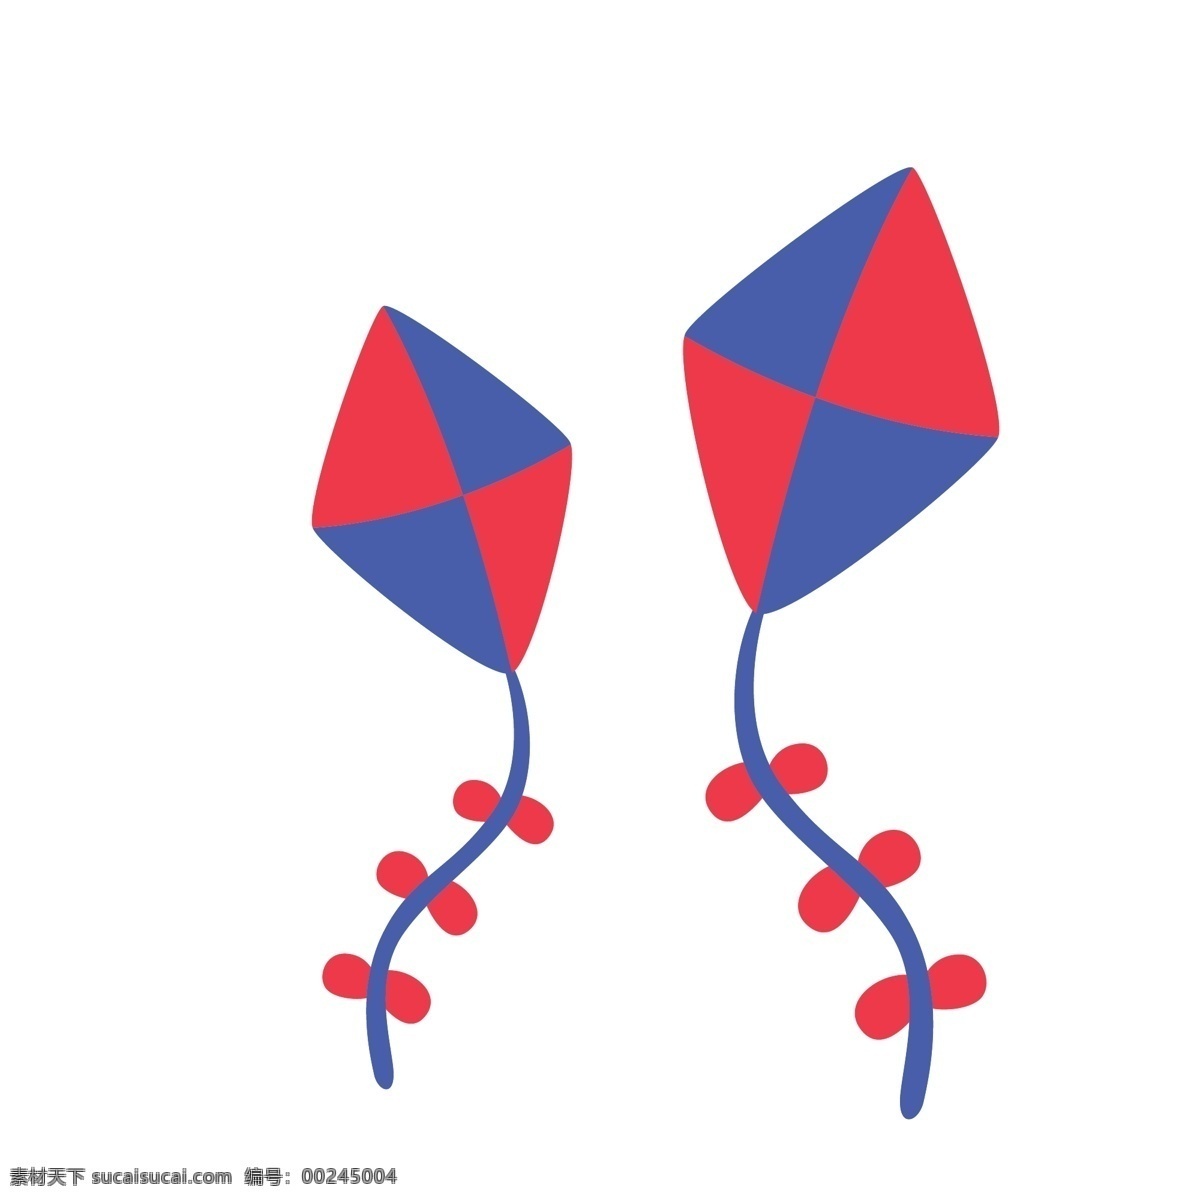 两 只 风筝 卡通 矢量 元素 两只